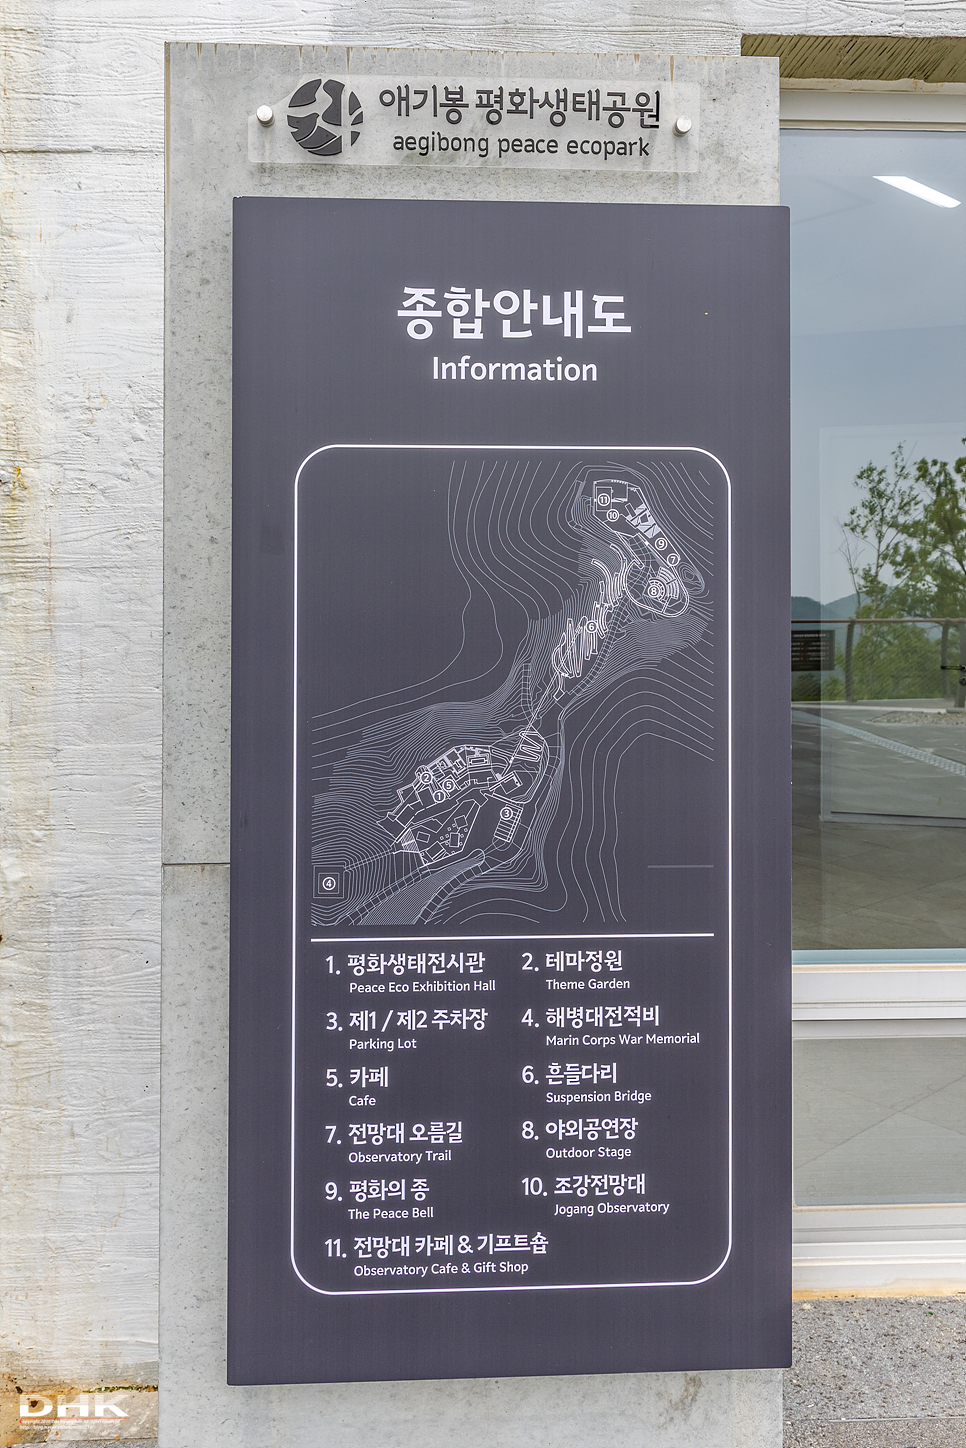 김포가볼만한곳 애기봉평화생태공원 서울근교 당일치기 주말 나들이코스